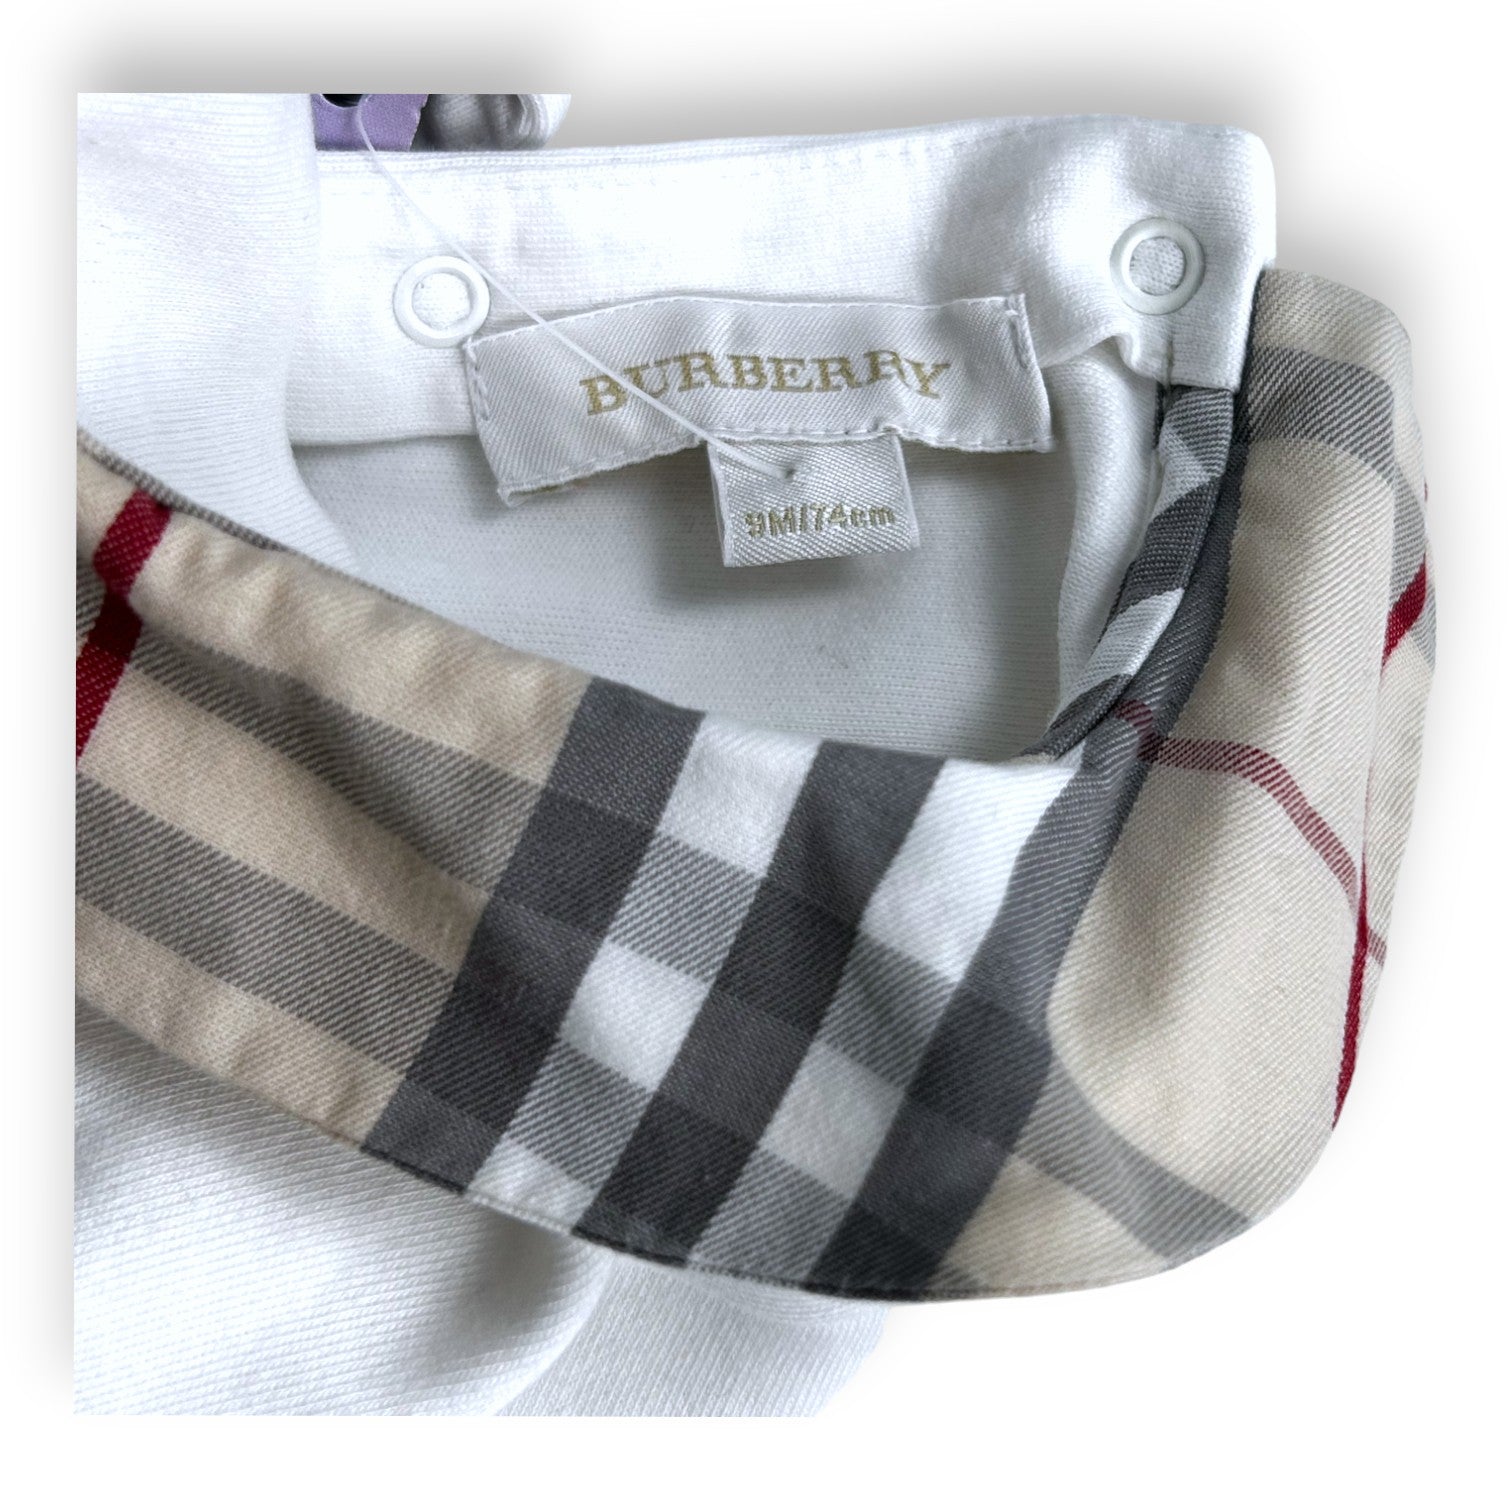 BURBERRY - Pyjama blanc et col avec motif check burberry - 9 mois